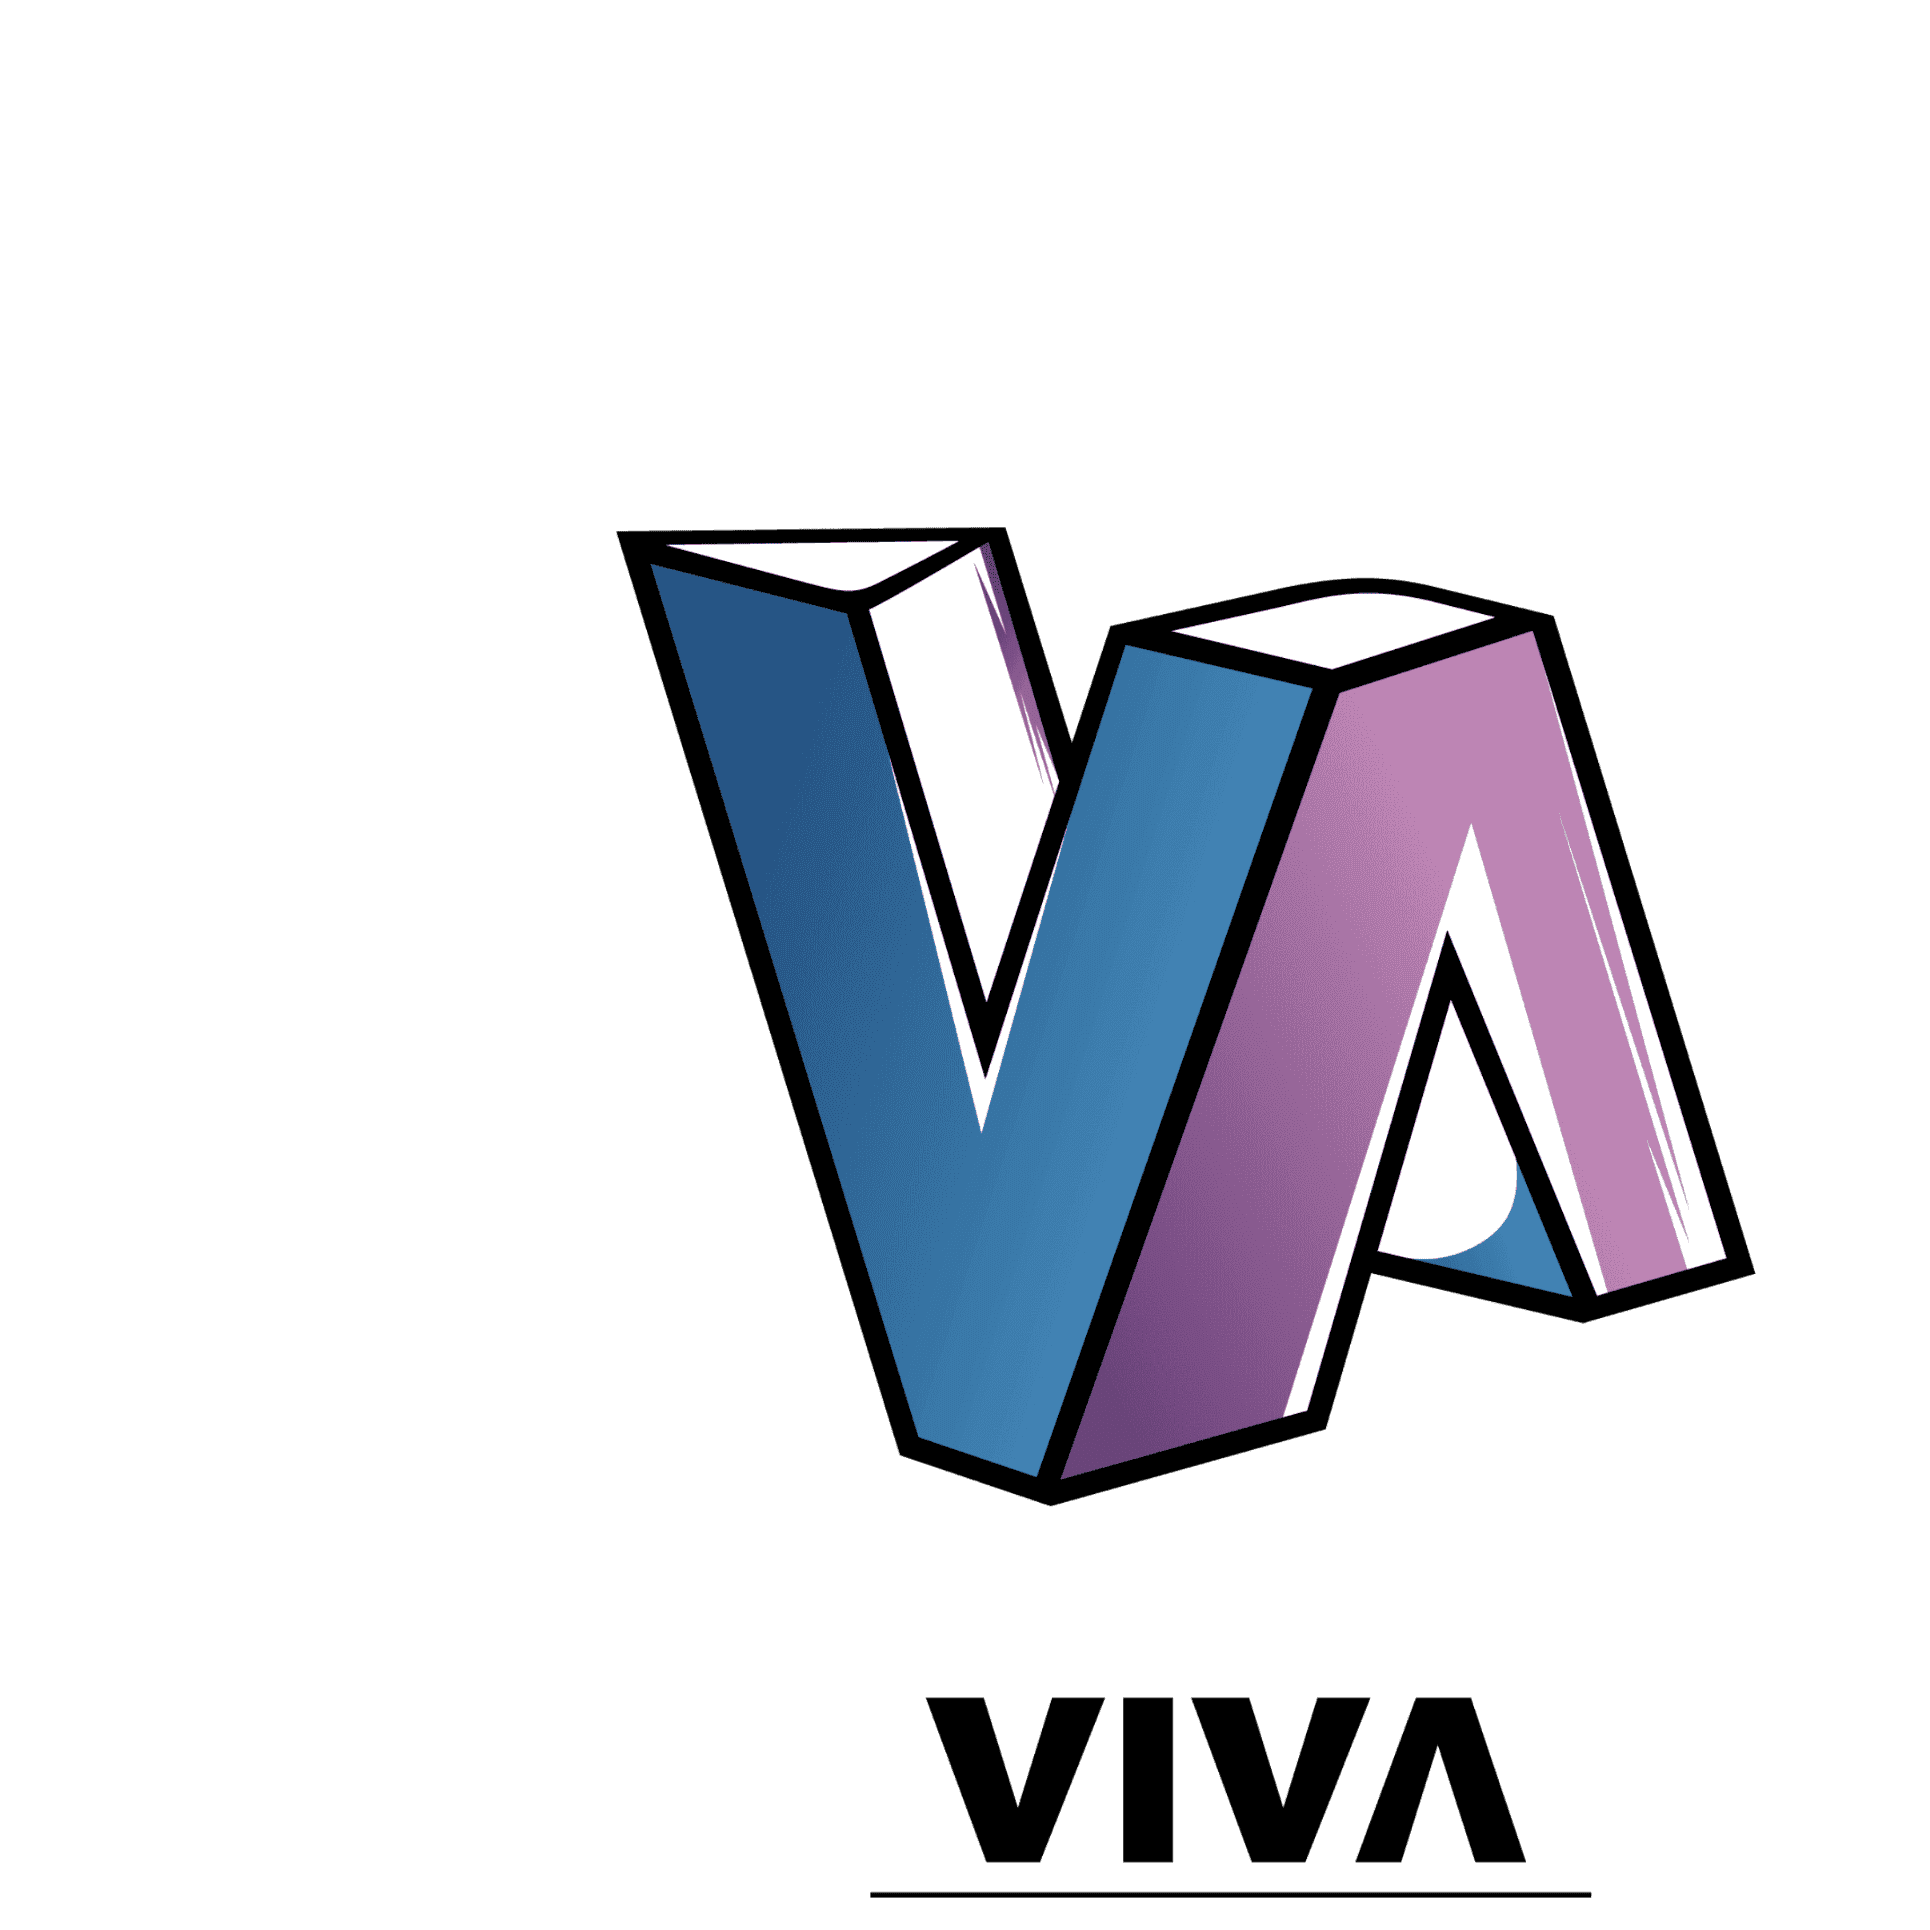 VIVA Personal und Treuhand Schaffhausen GmbH